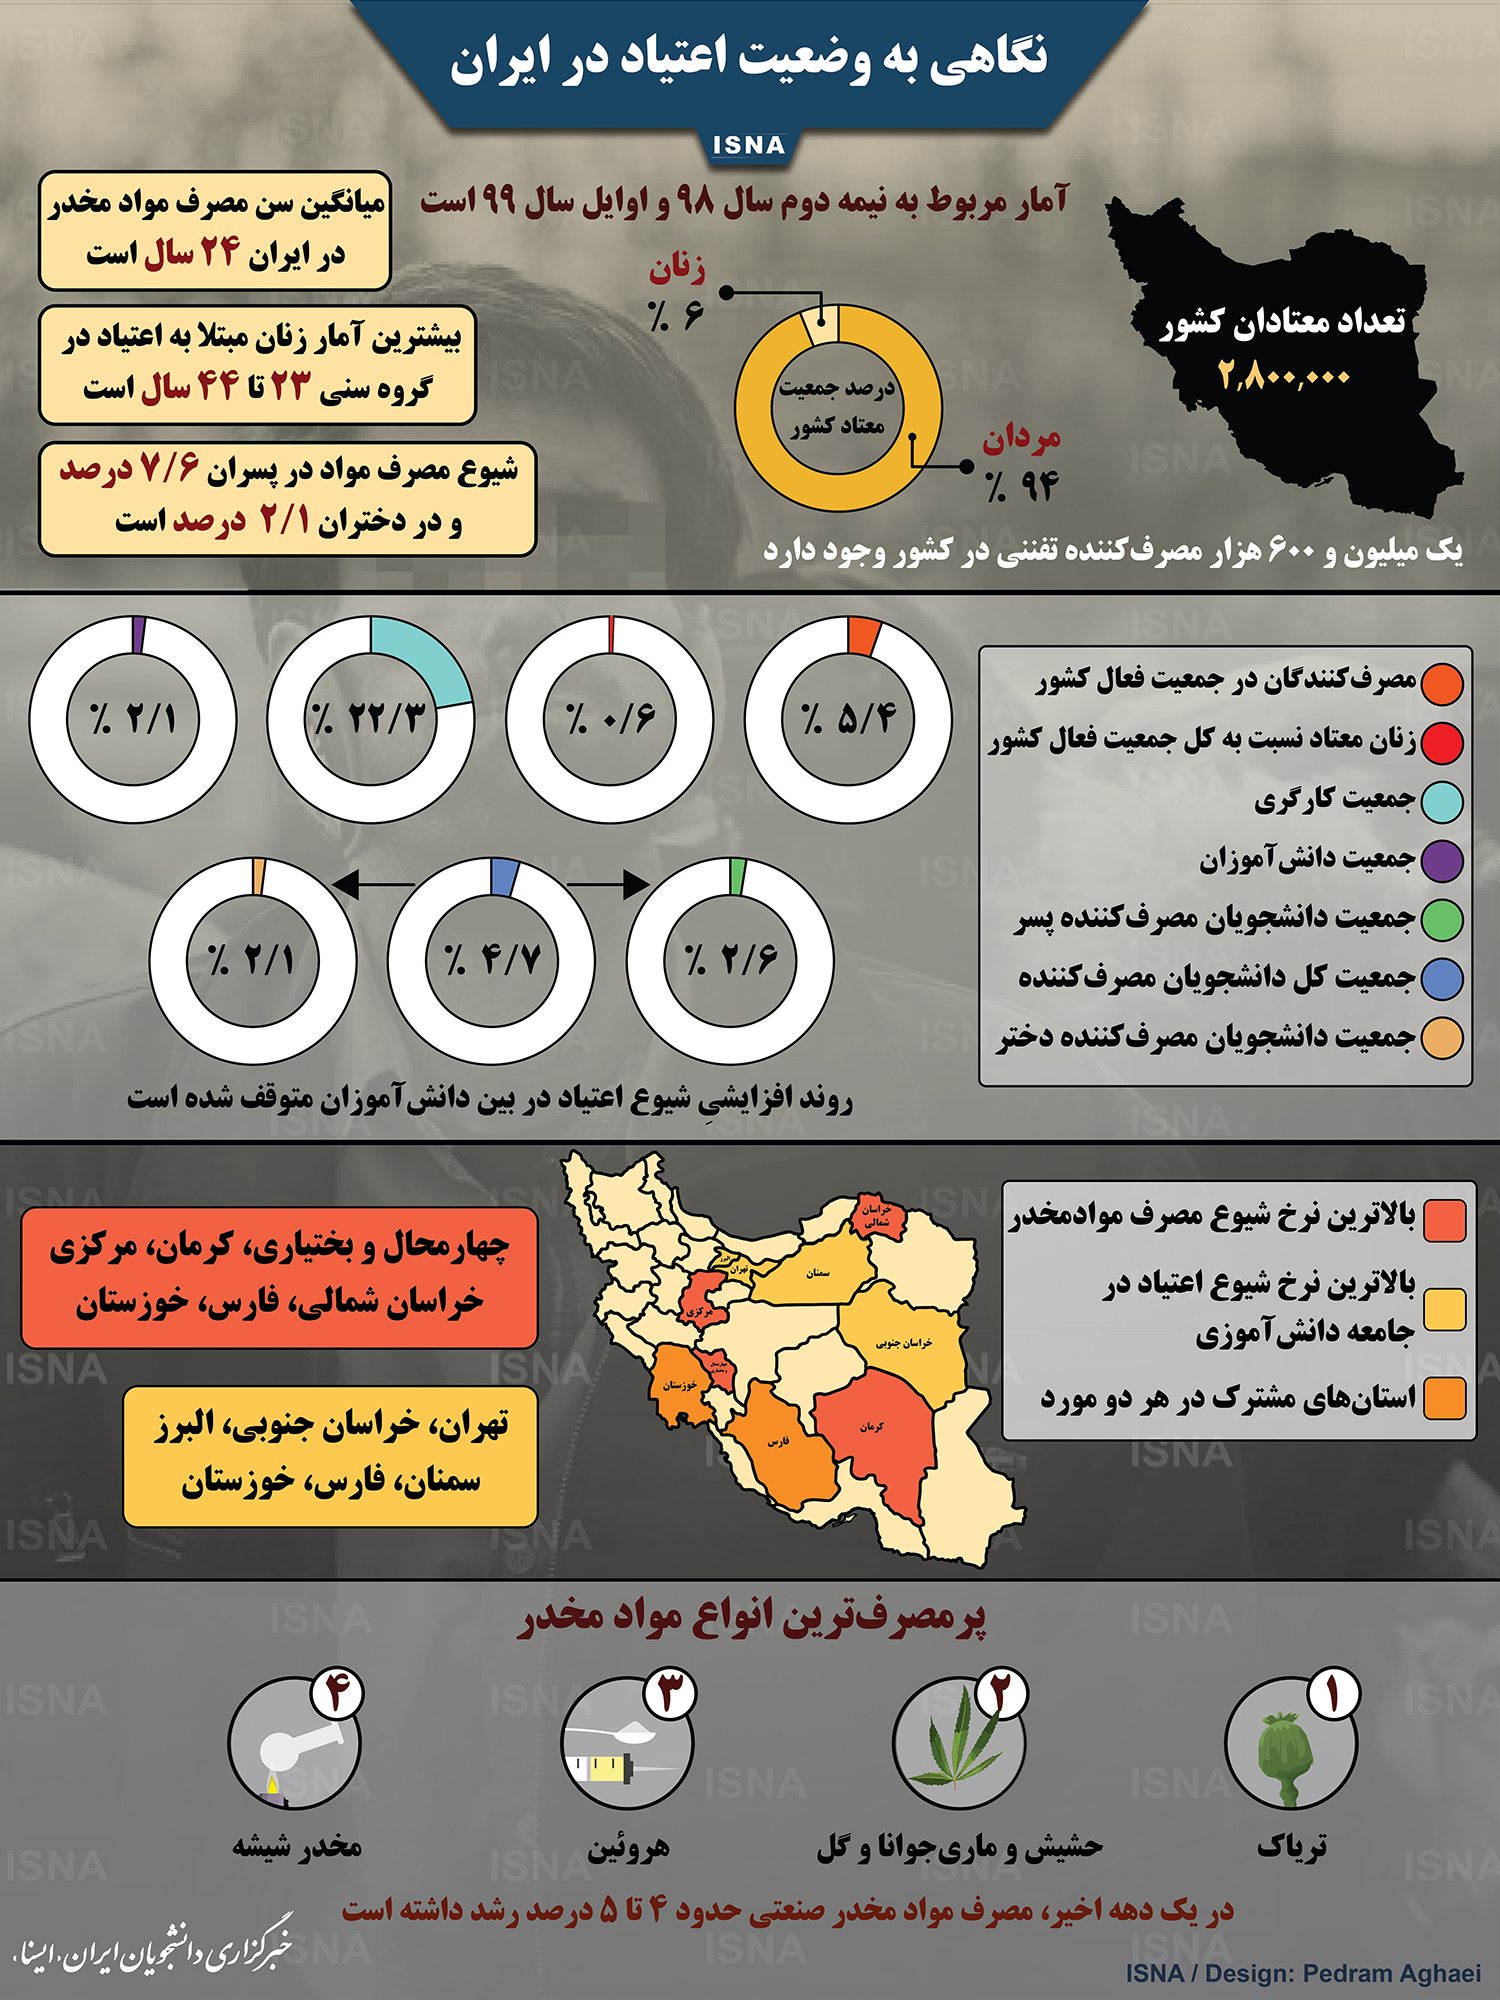 اینفوگرافیک / نگاهی به وضعیت اعتیاد در ایران